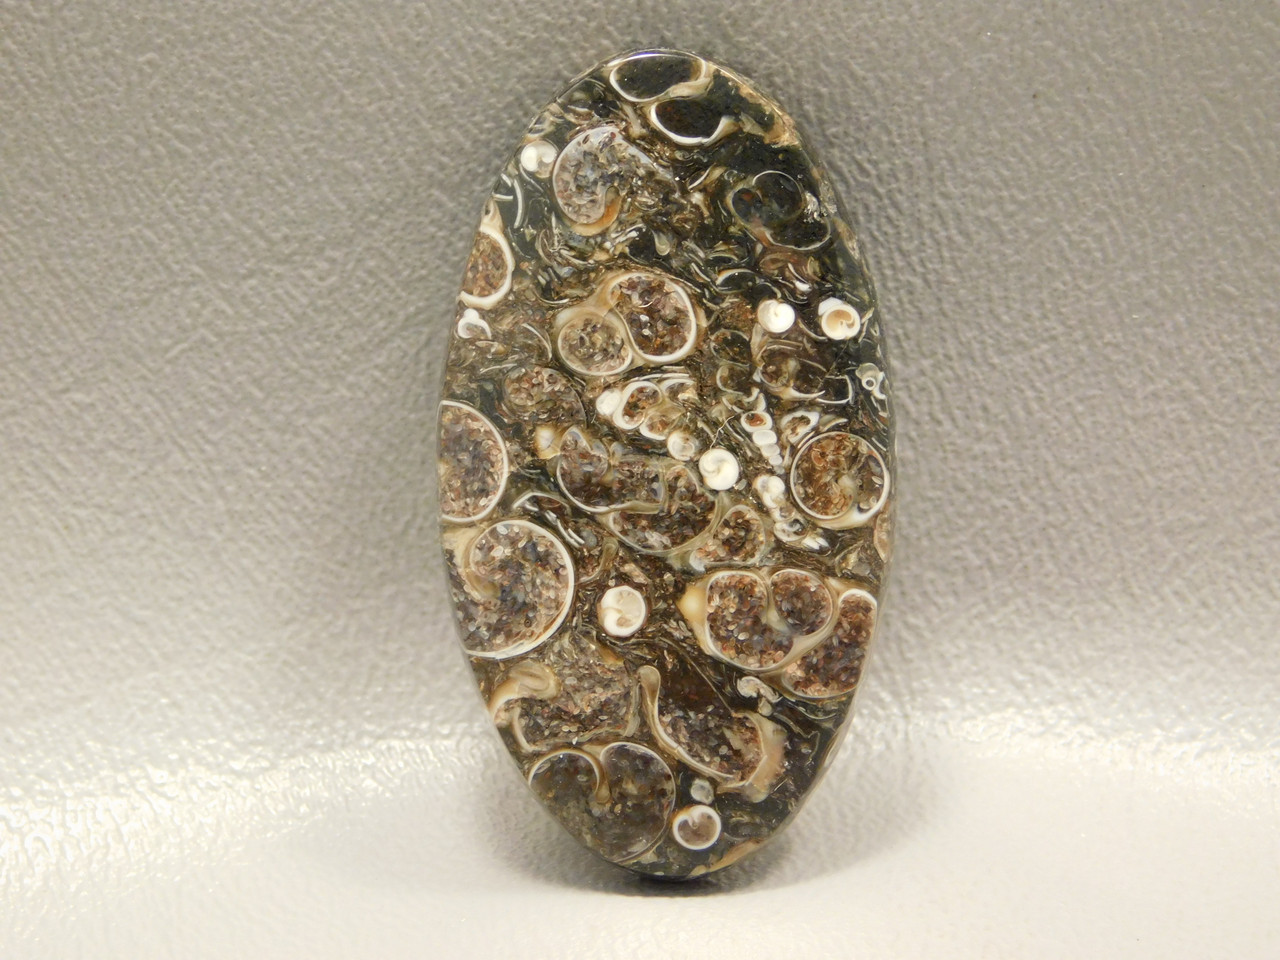 Fossil Turritella Agate Semiprecious Stone Cabochon #1